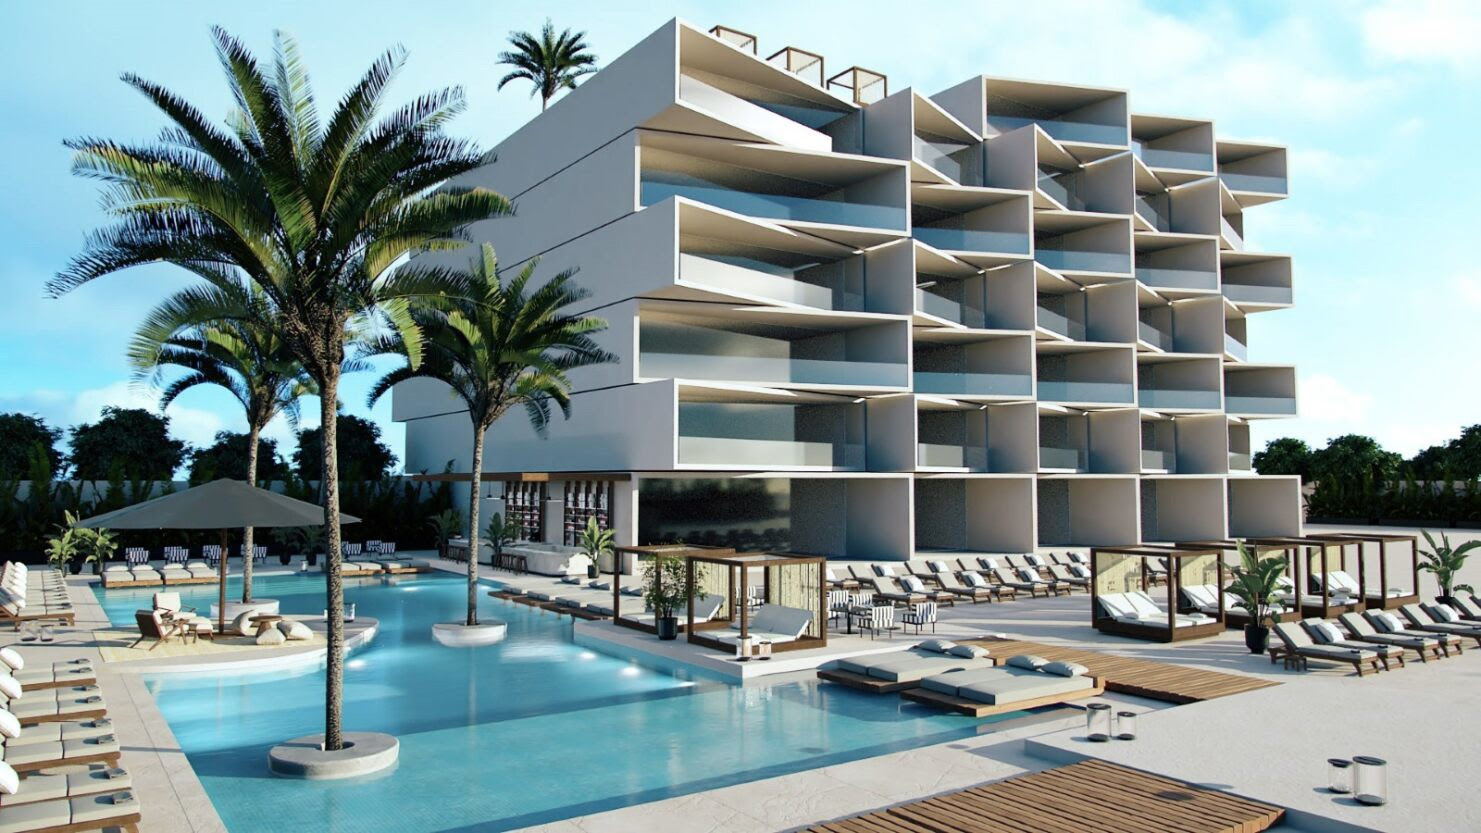 Estimar Hotels afianza sus planes de expansión con sus nuevos proyectos en Valencia y Benicassim